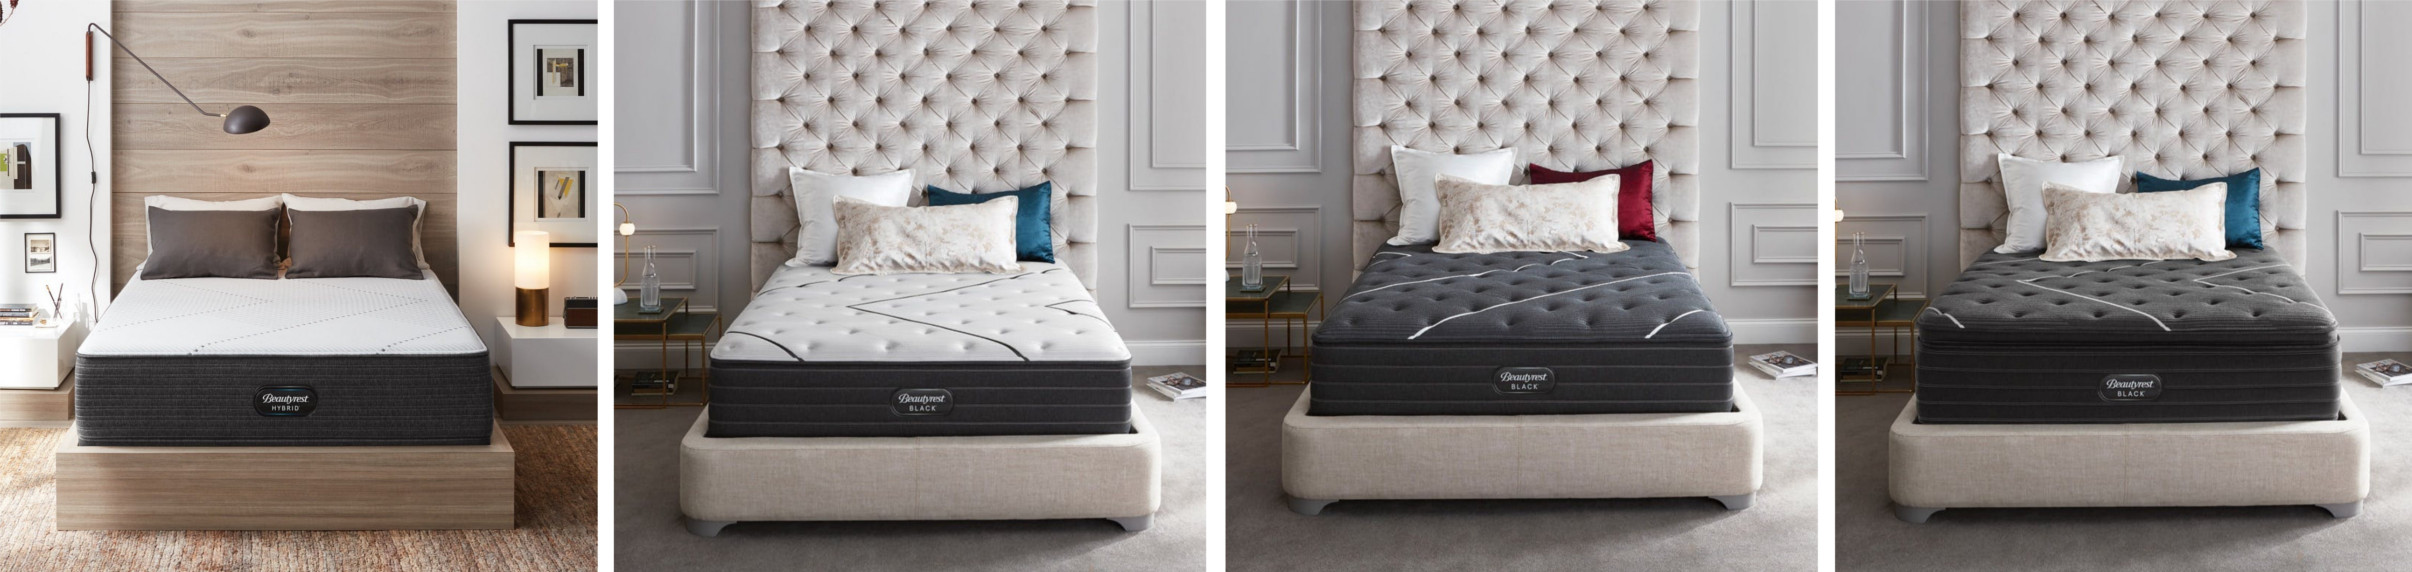 beautyrest online mattresses